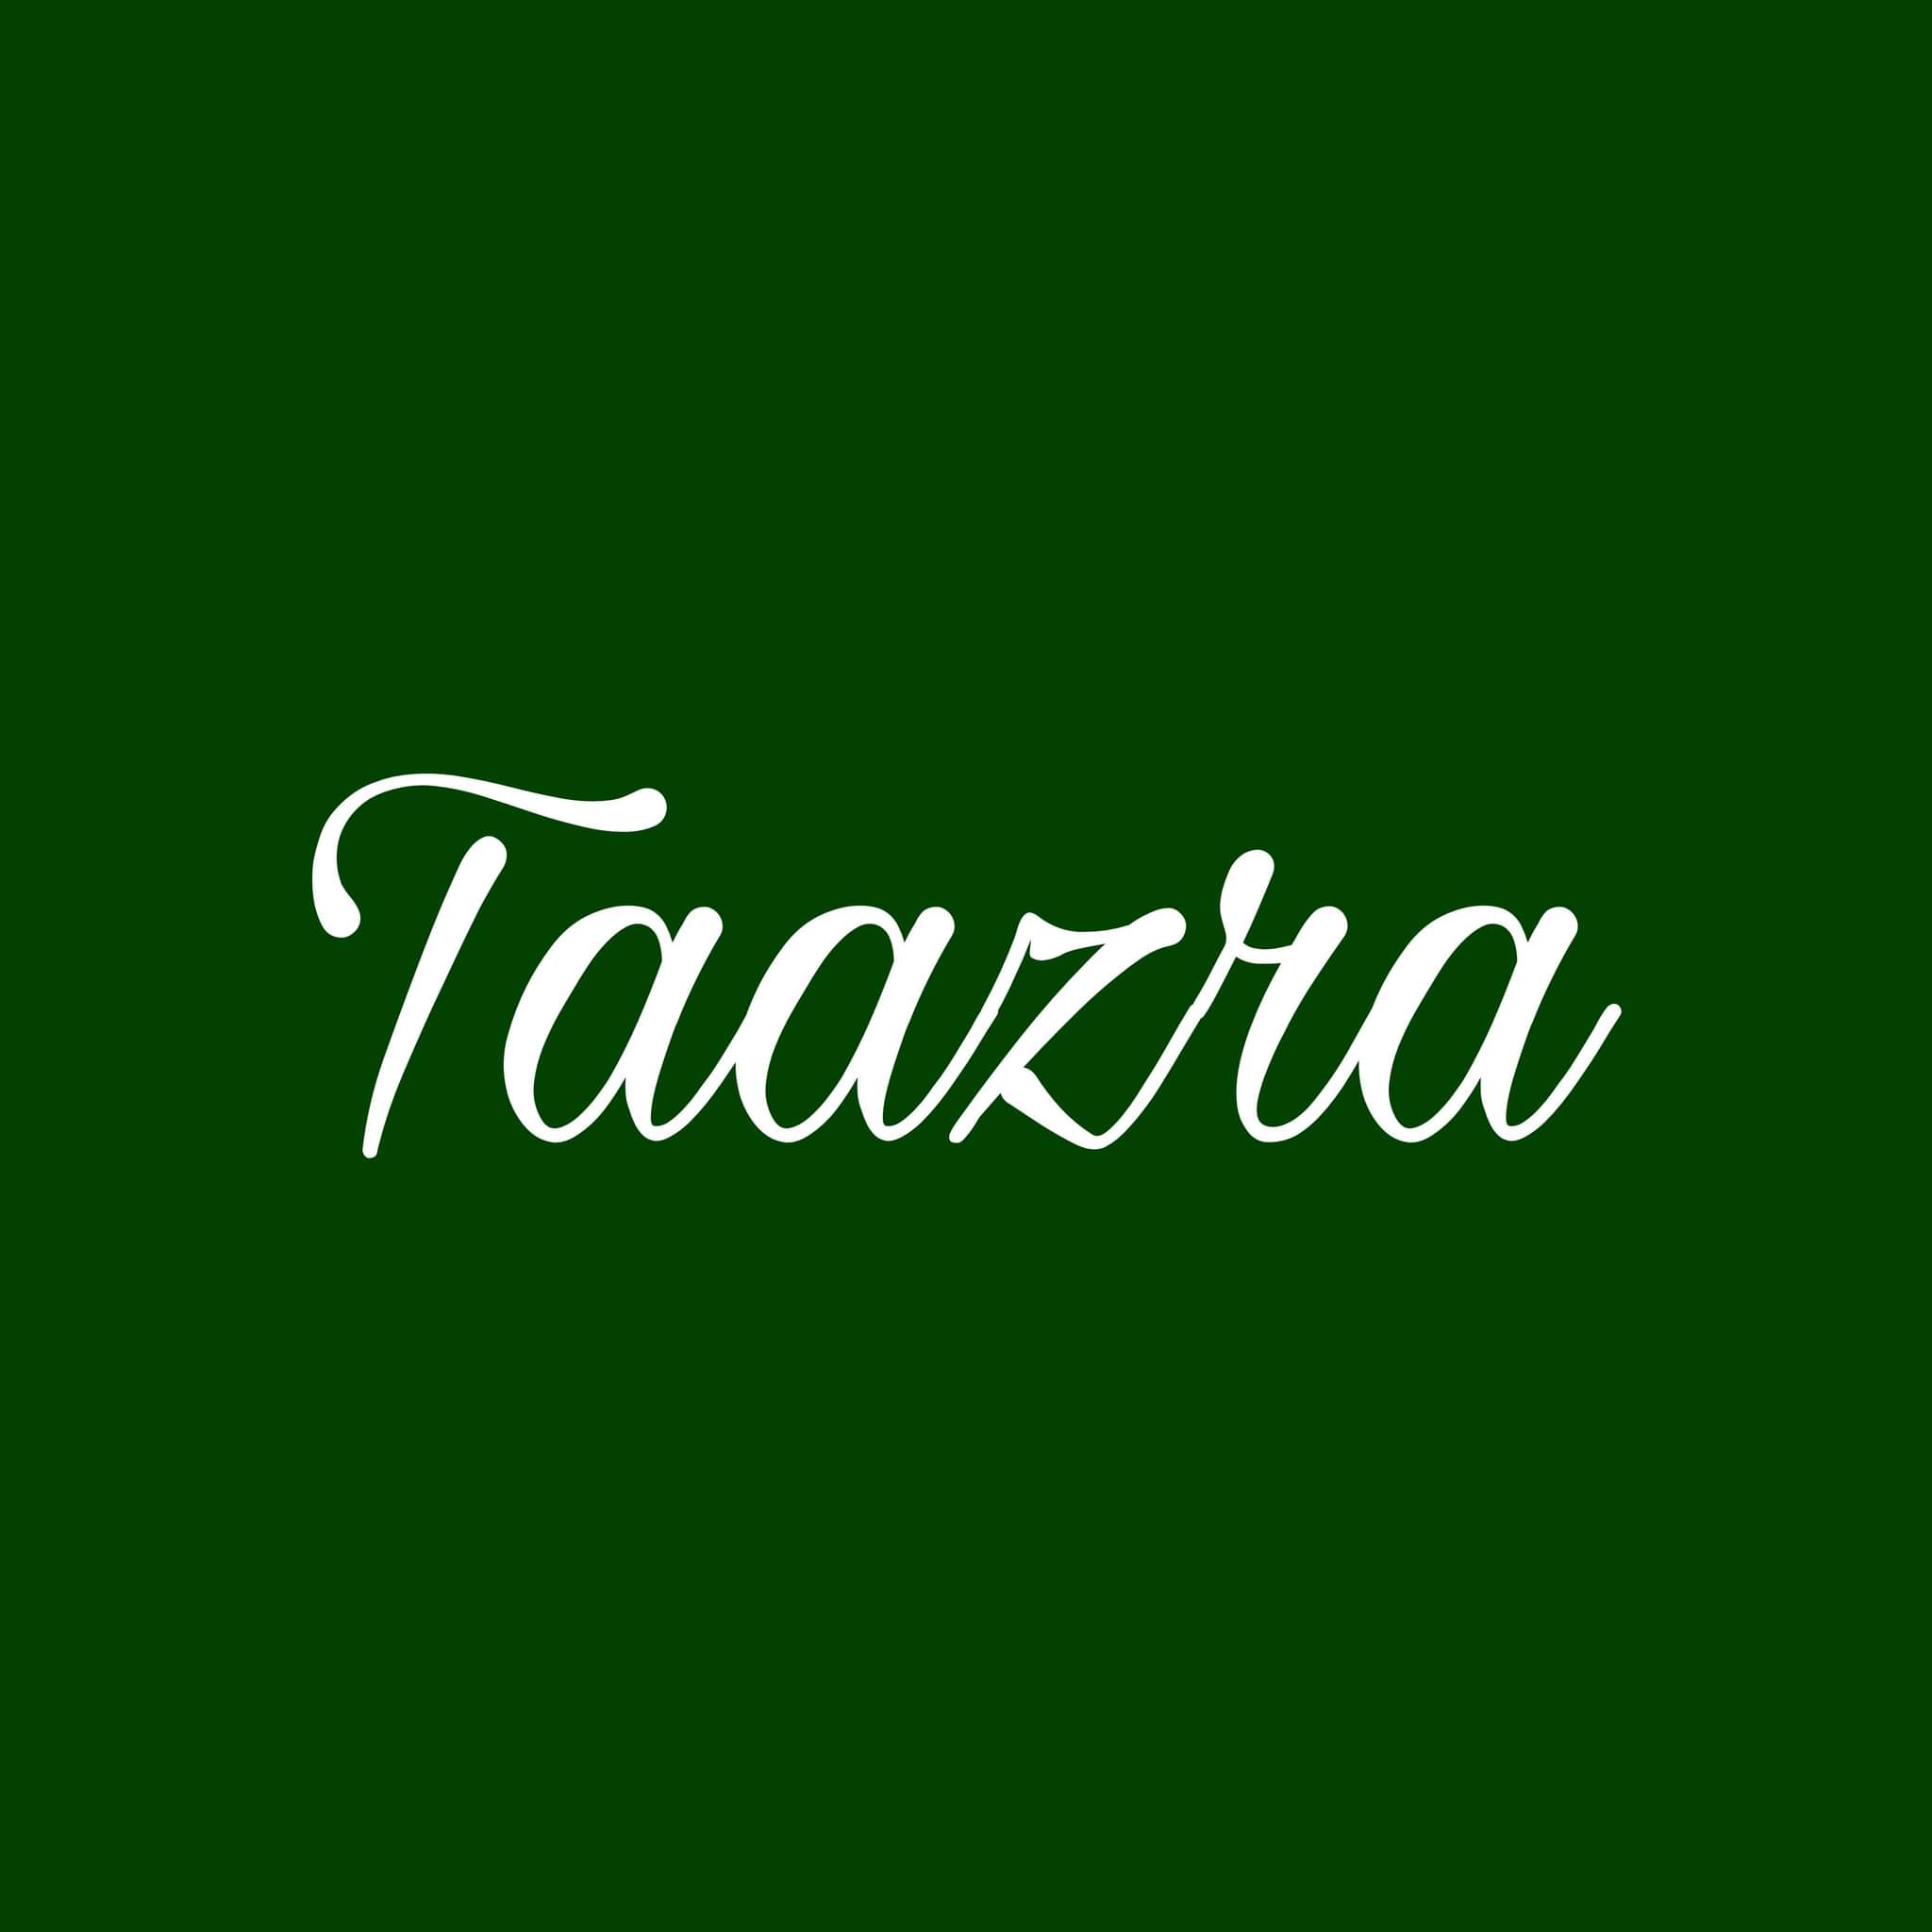 Taazra